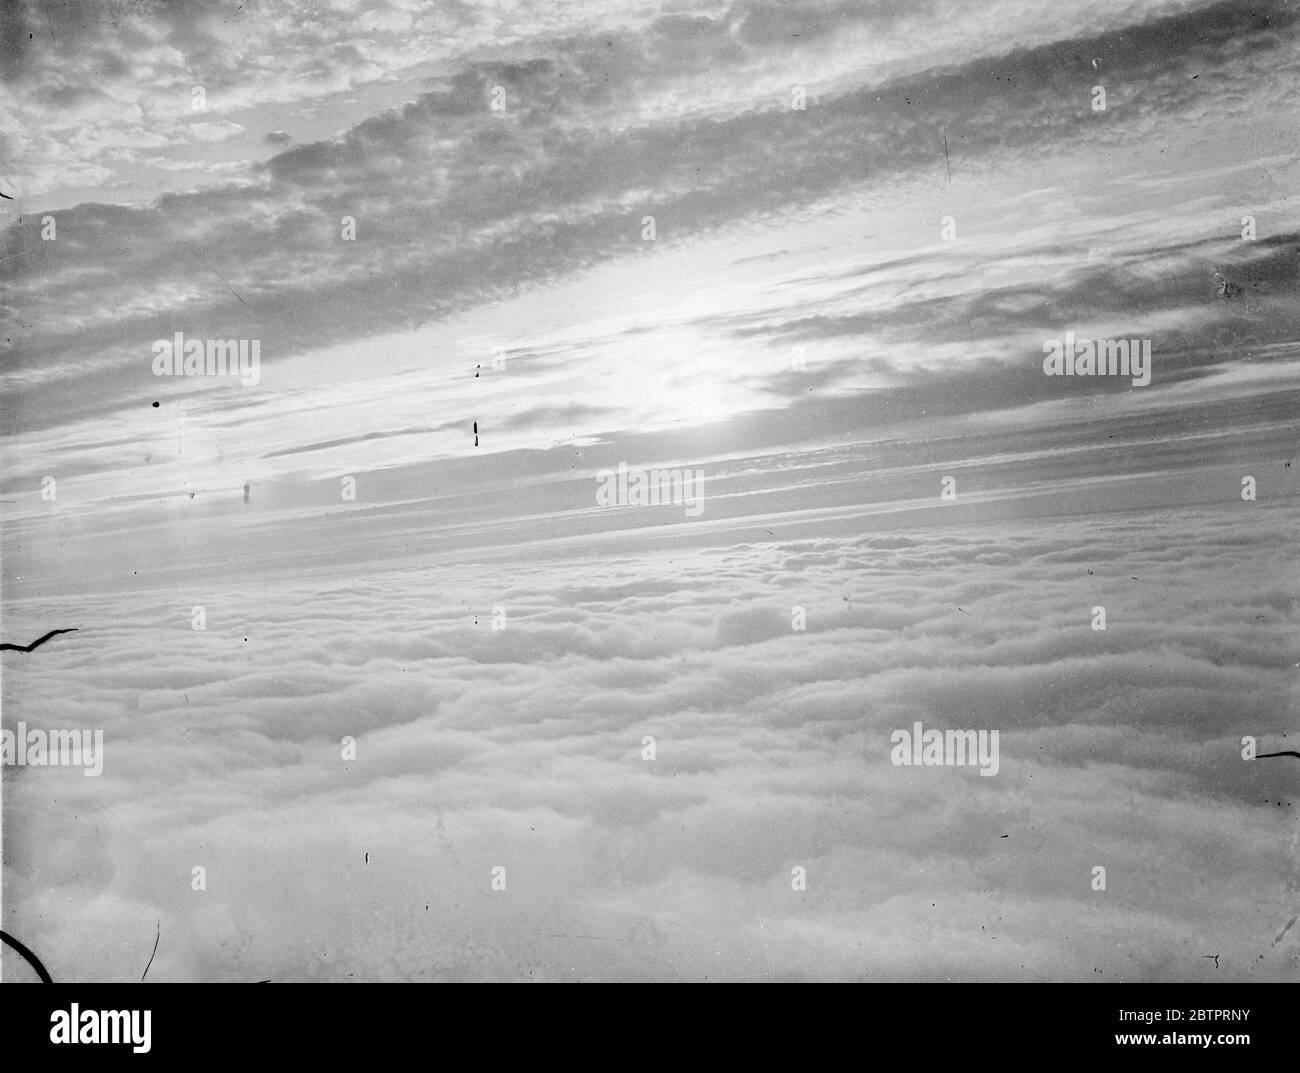 Questa è una nebbia inglese. Questa fotografia, tratta dall'aria sul Devonshire, Inghilterra. Mostra il tramonto su una sponda della nebbia che scese fino a una profondità di 4000 metri. La nebbia si estendeva dai sobborghi di Londra a Plymouth per circa 200 chilometri. La foto è stata fatta da un fotografo di notizie del pianeta, girando su un aereo speciale da un incarico a Plymouth. 20 ottobre 1937 Foto Stock